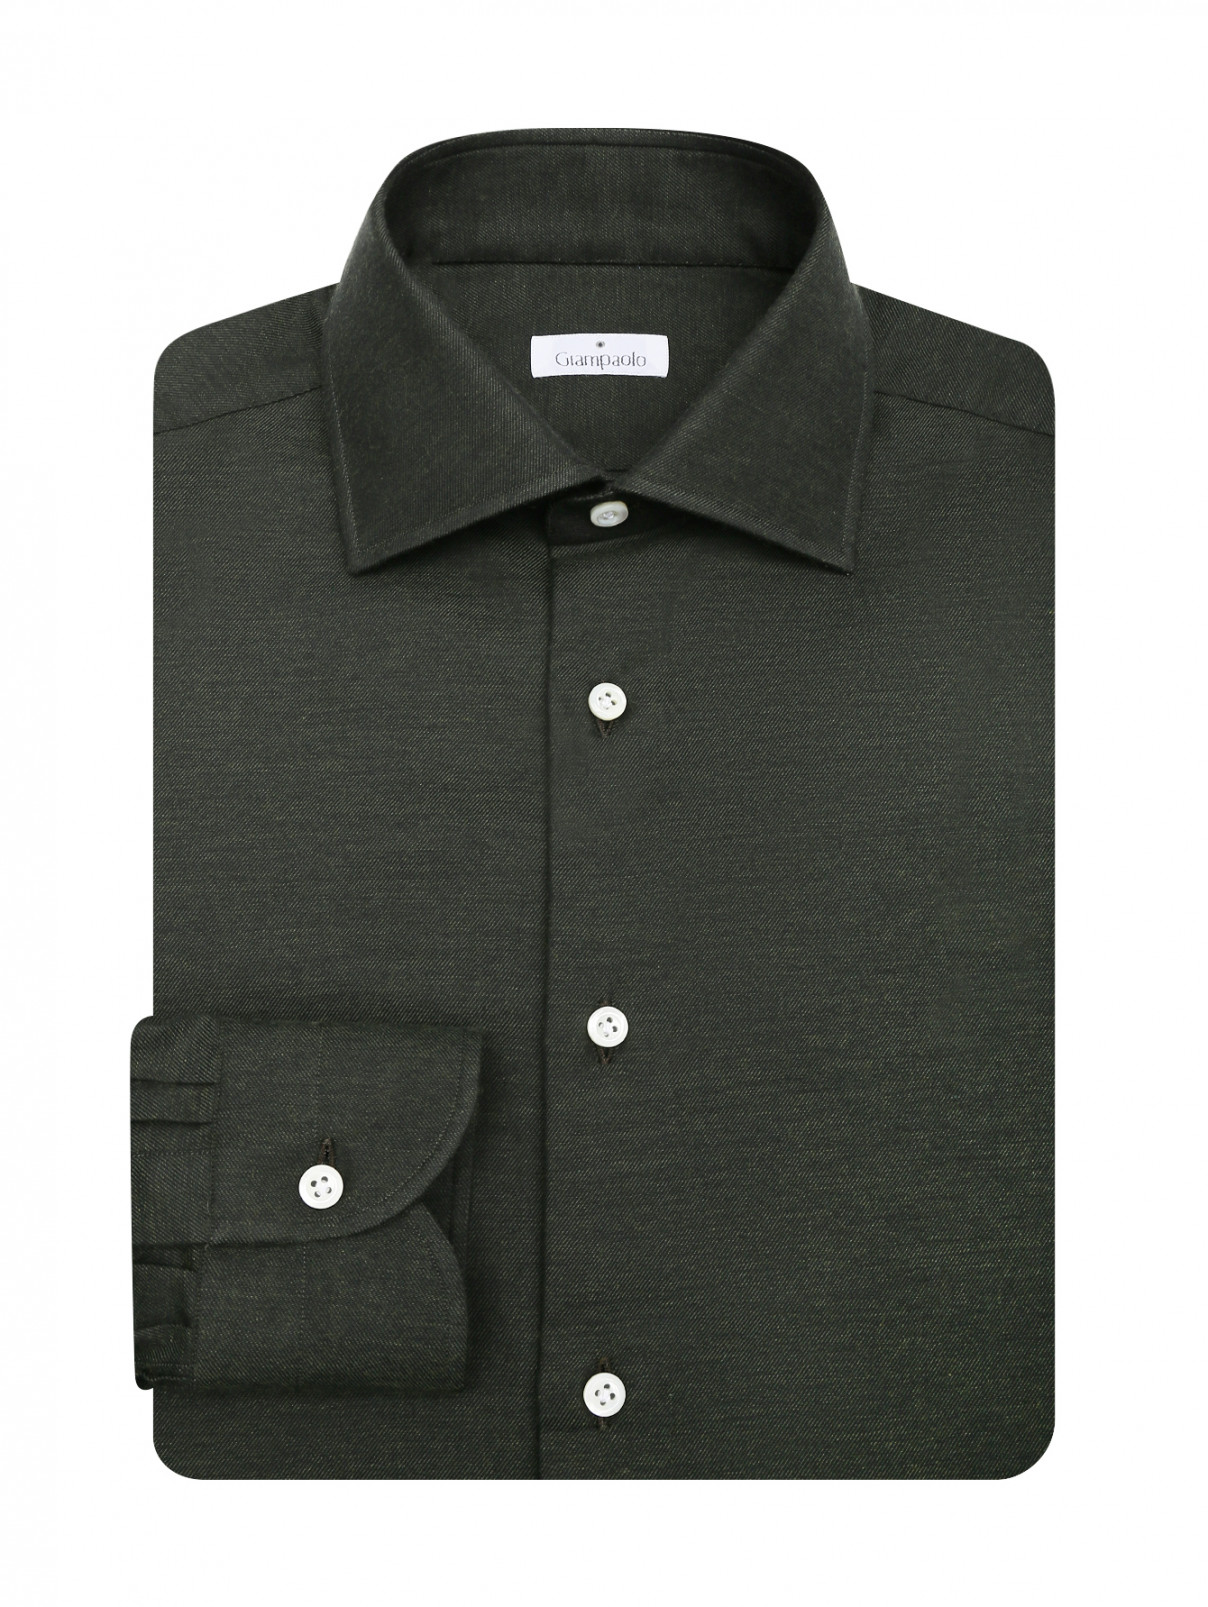 Рубашка из хлопка Giampaolo  –  Общий вид  – Цвет:  Зеленый